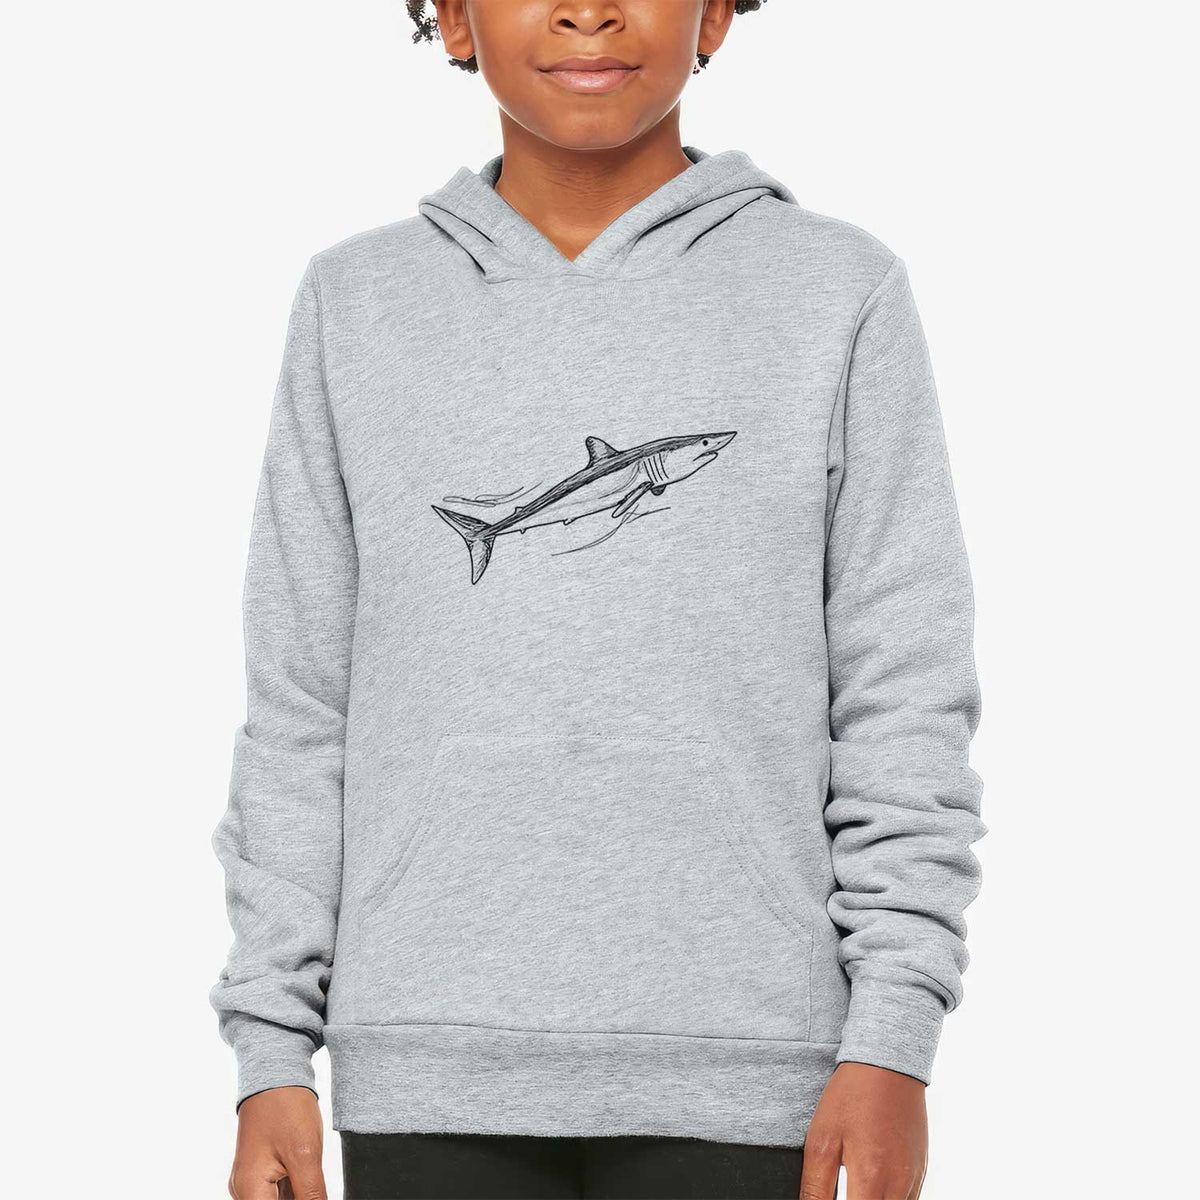 Mako Shark - Youth Hoodie Sweatshirt